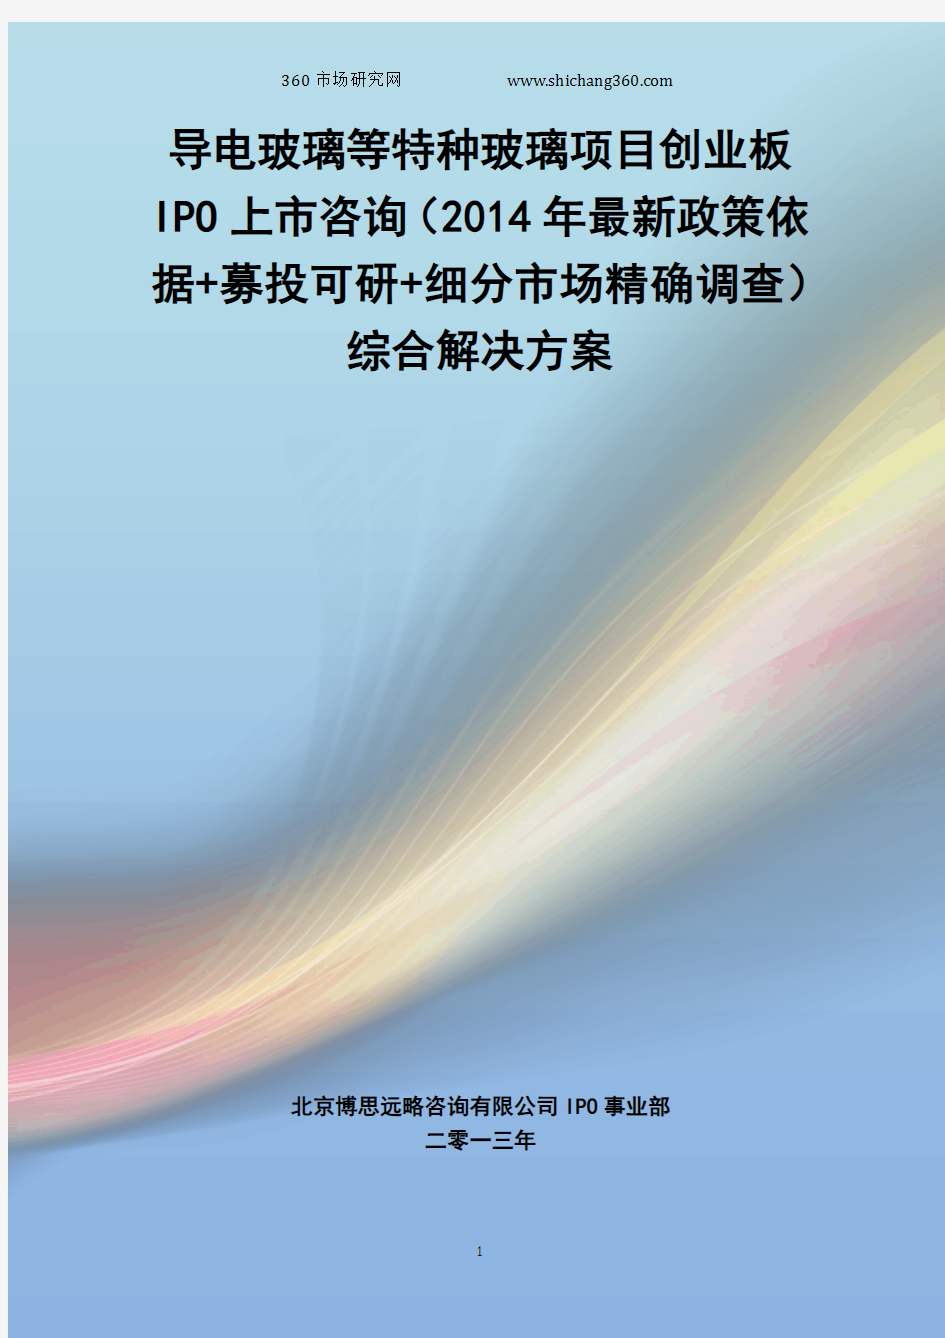 导电玻璃等特种玻璃IPO上市咨询(2014年最新政策+募投可研+细分市场调查)综合解决方案